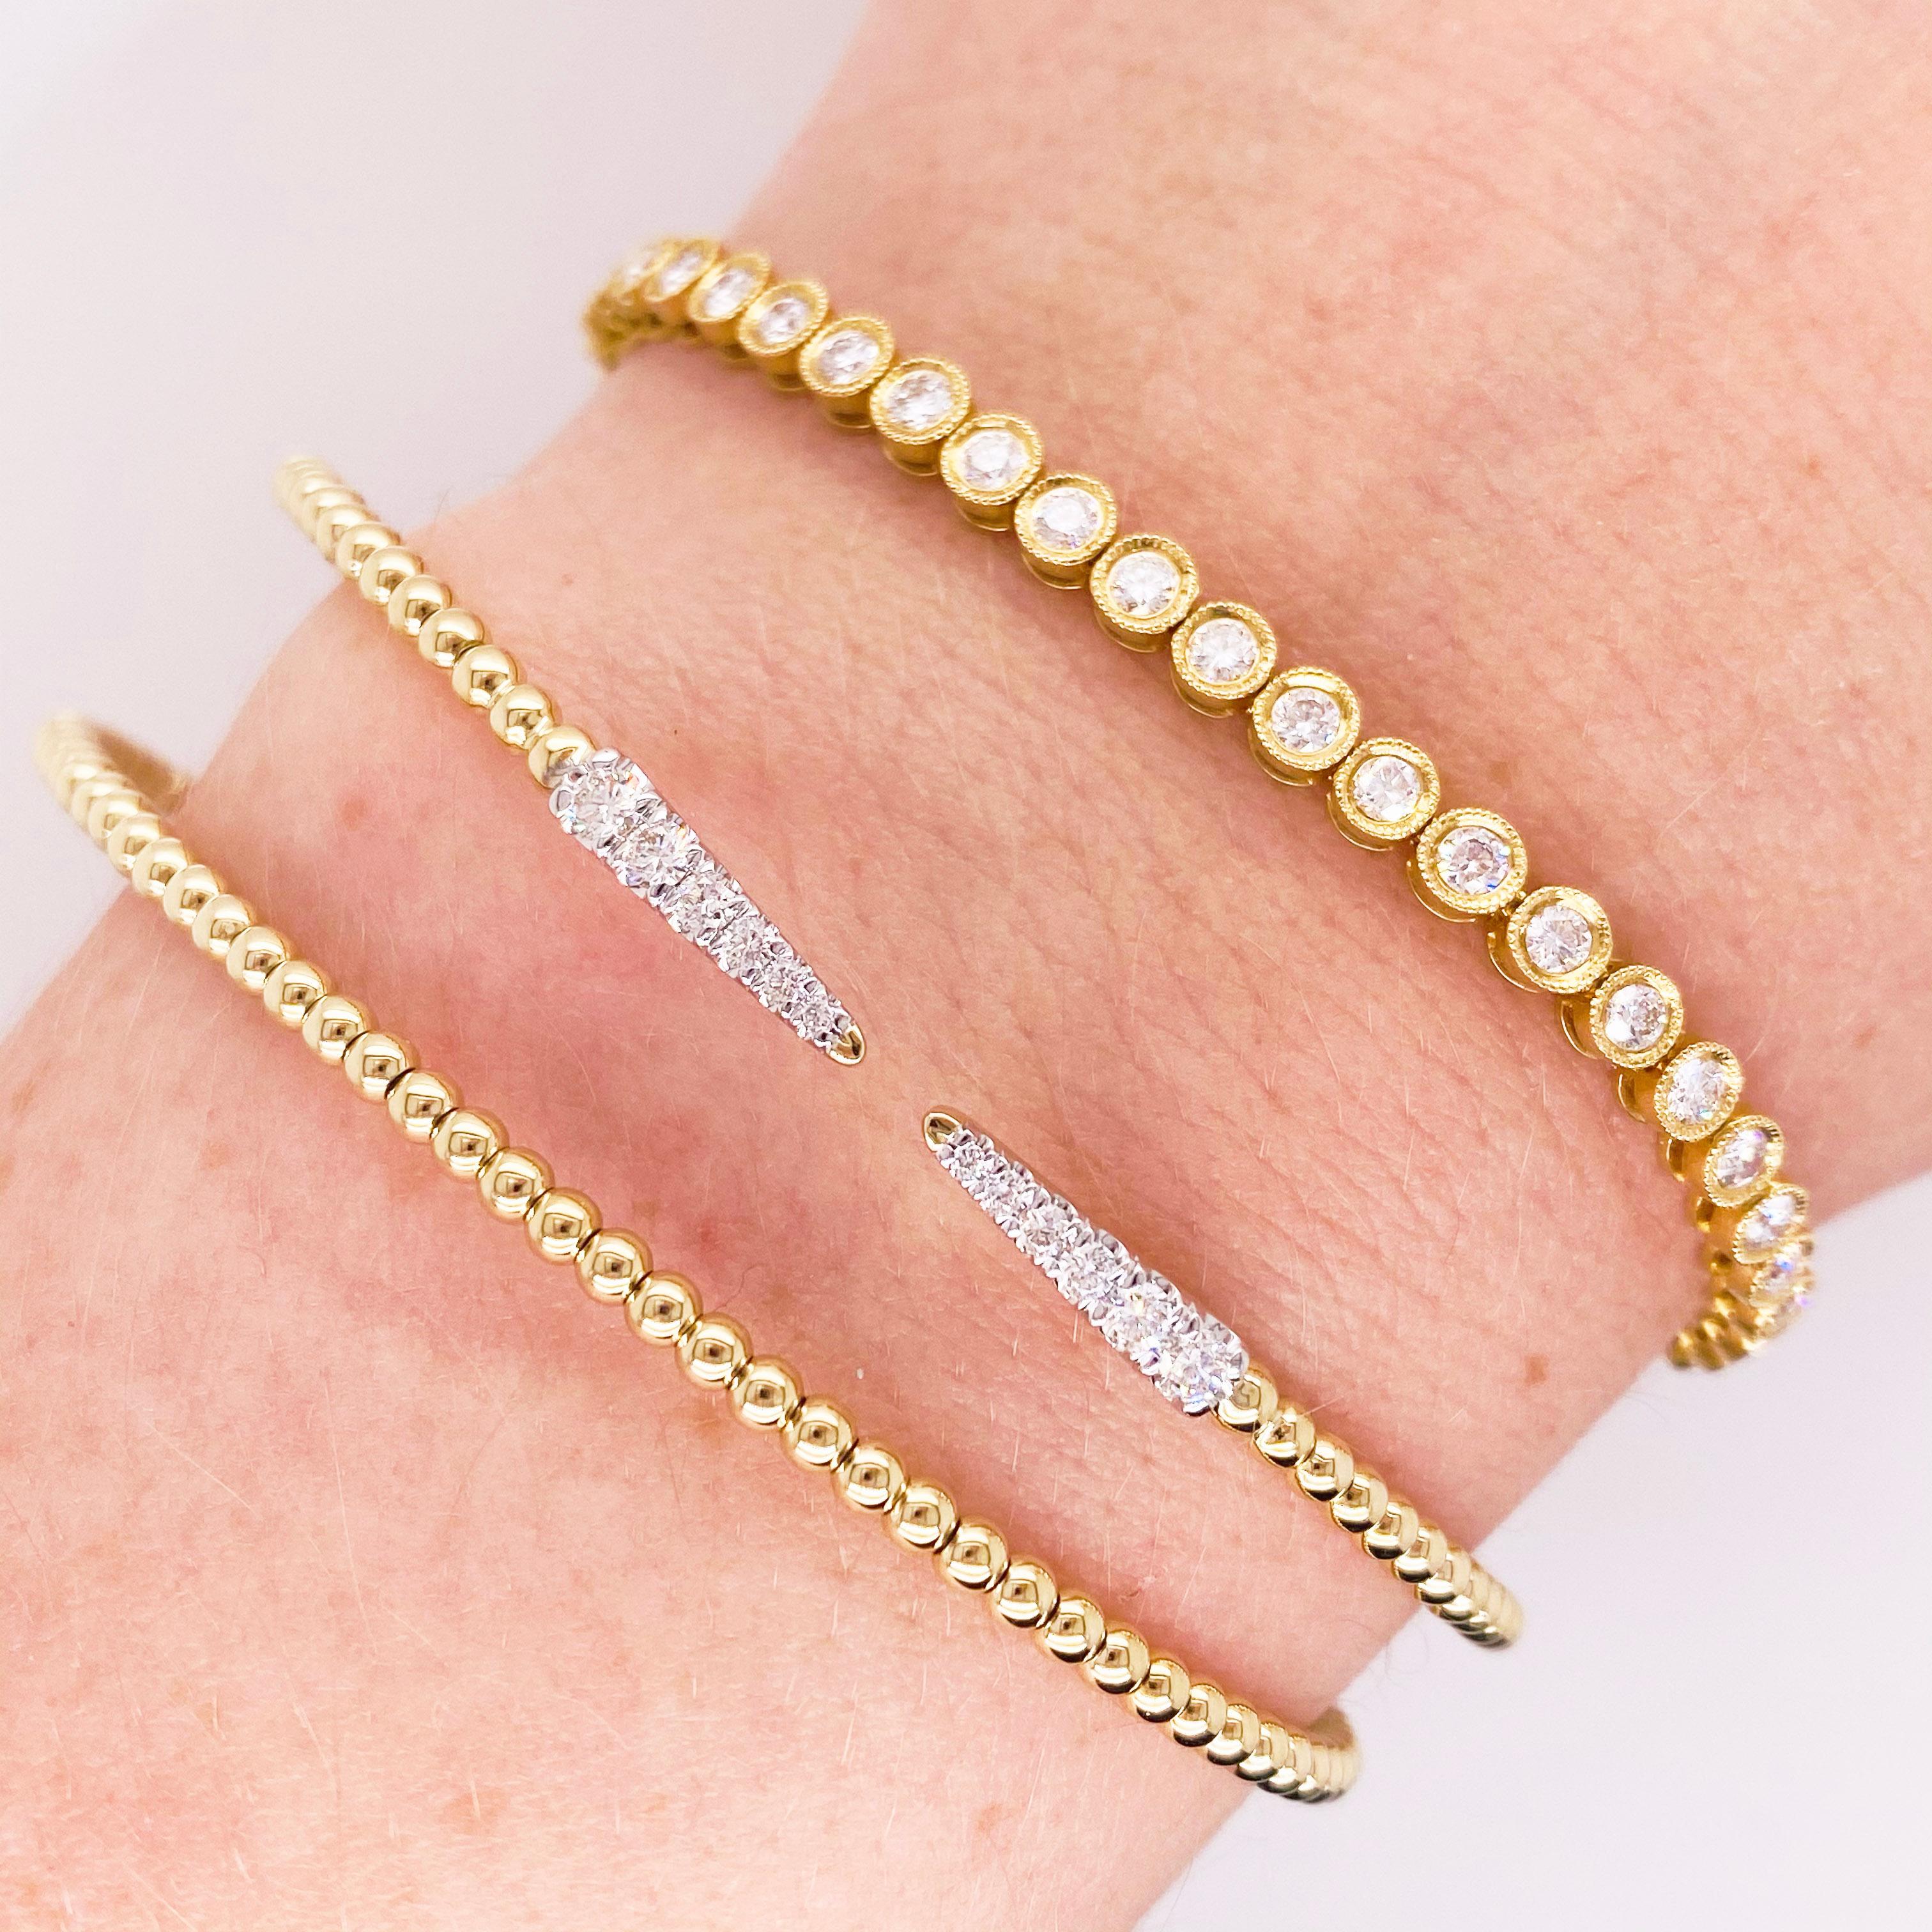 Offene Armspange aus 14 Karat Gold und Diamanten mit einzigartigem, flexiblem Design! Die Flexibilität bedeutet, dass sie für fast jede Handgelenksgröße geeignet ist, da man sie nicht über die Hand stülpen muss.  Dieses Armband ist mit 10 runden,